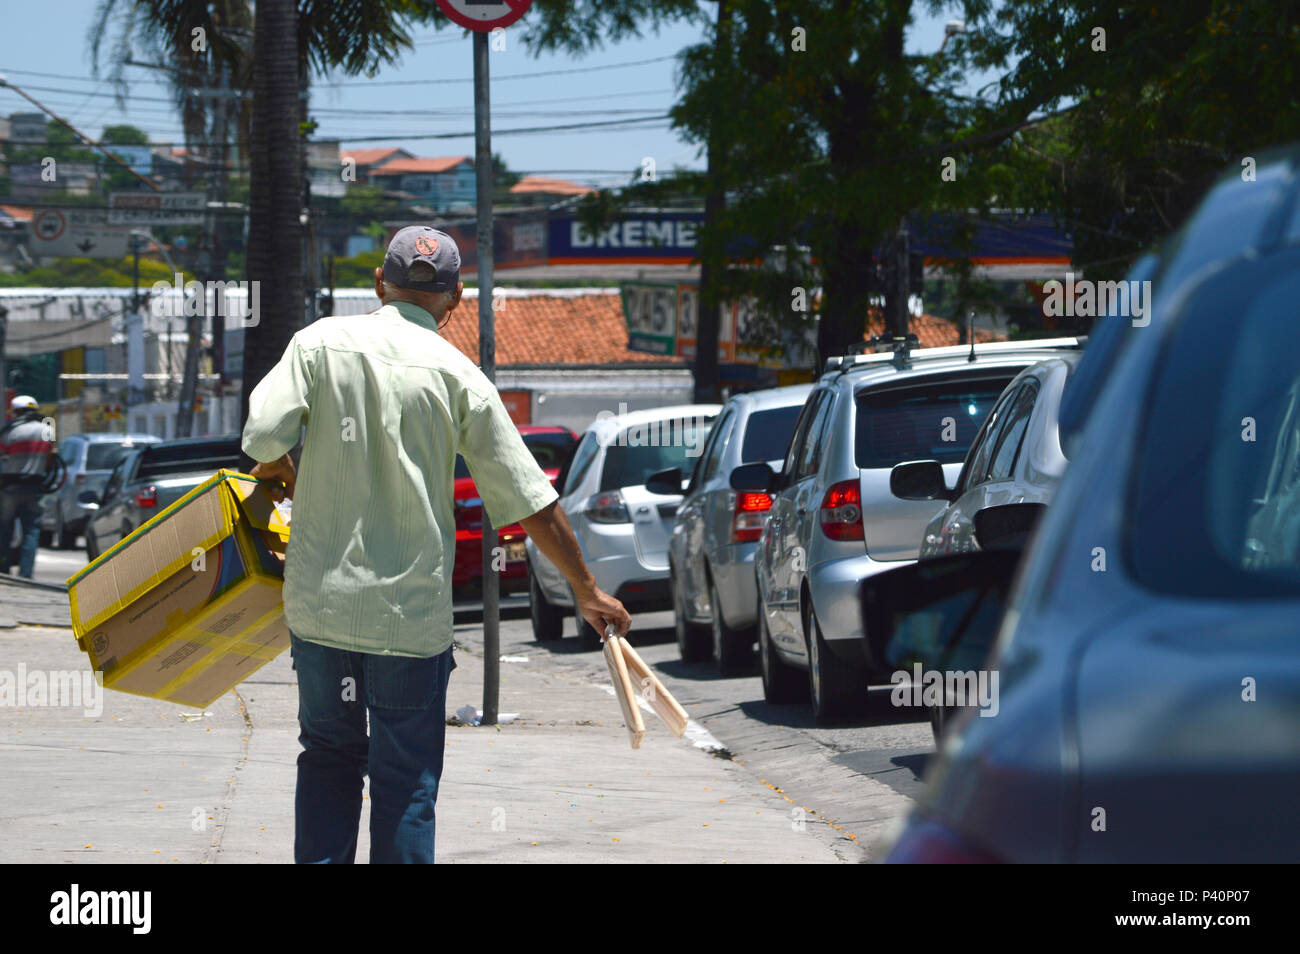 Trabalho informal. Vendedor ambulante trabalha entre carros parados no farol. Zona Oeste. Stock Photo